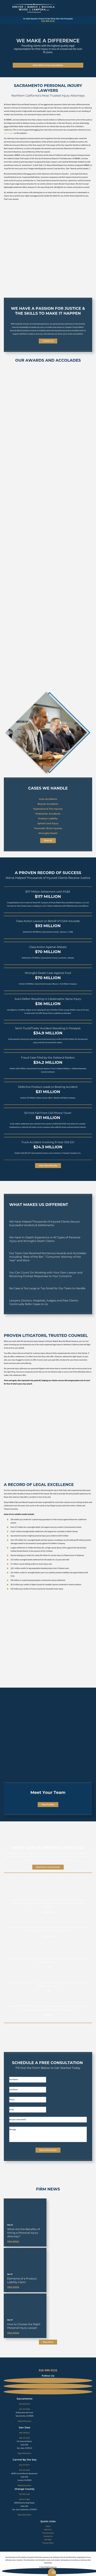 Dreyer Babich Buccola Wood Campora, LLP - Auburn CA Lawyers